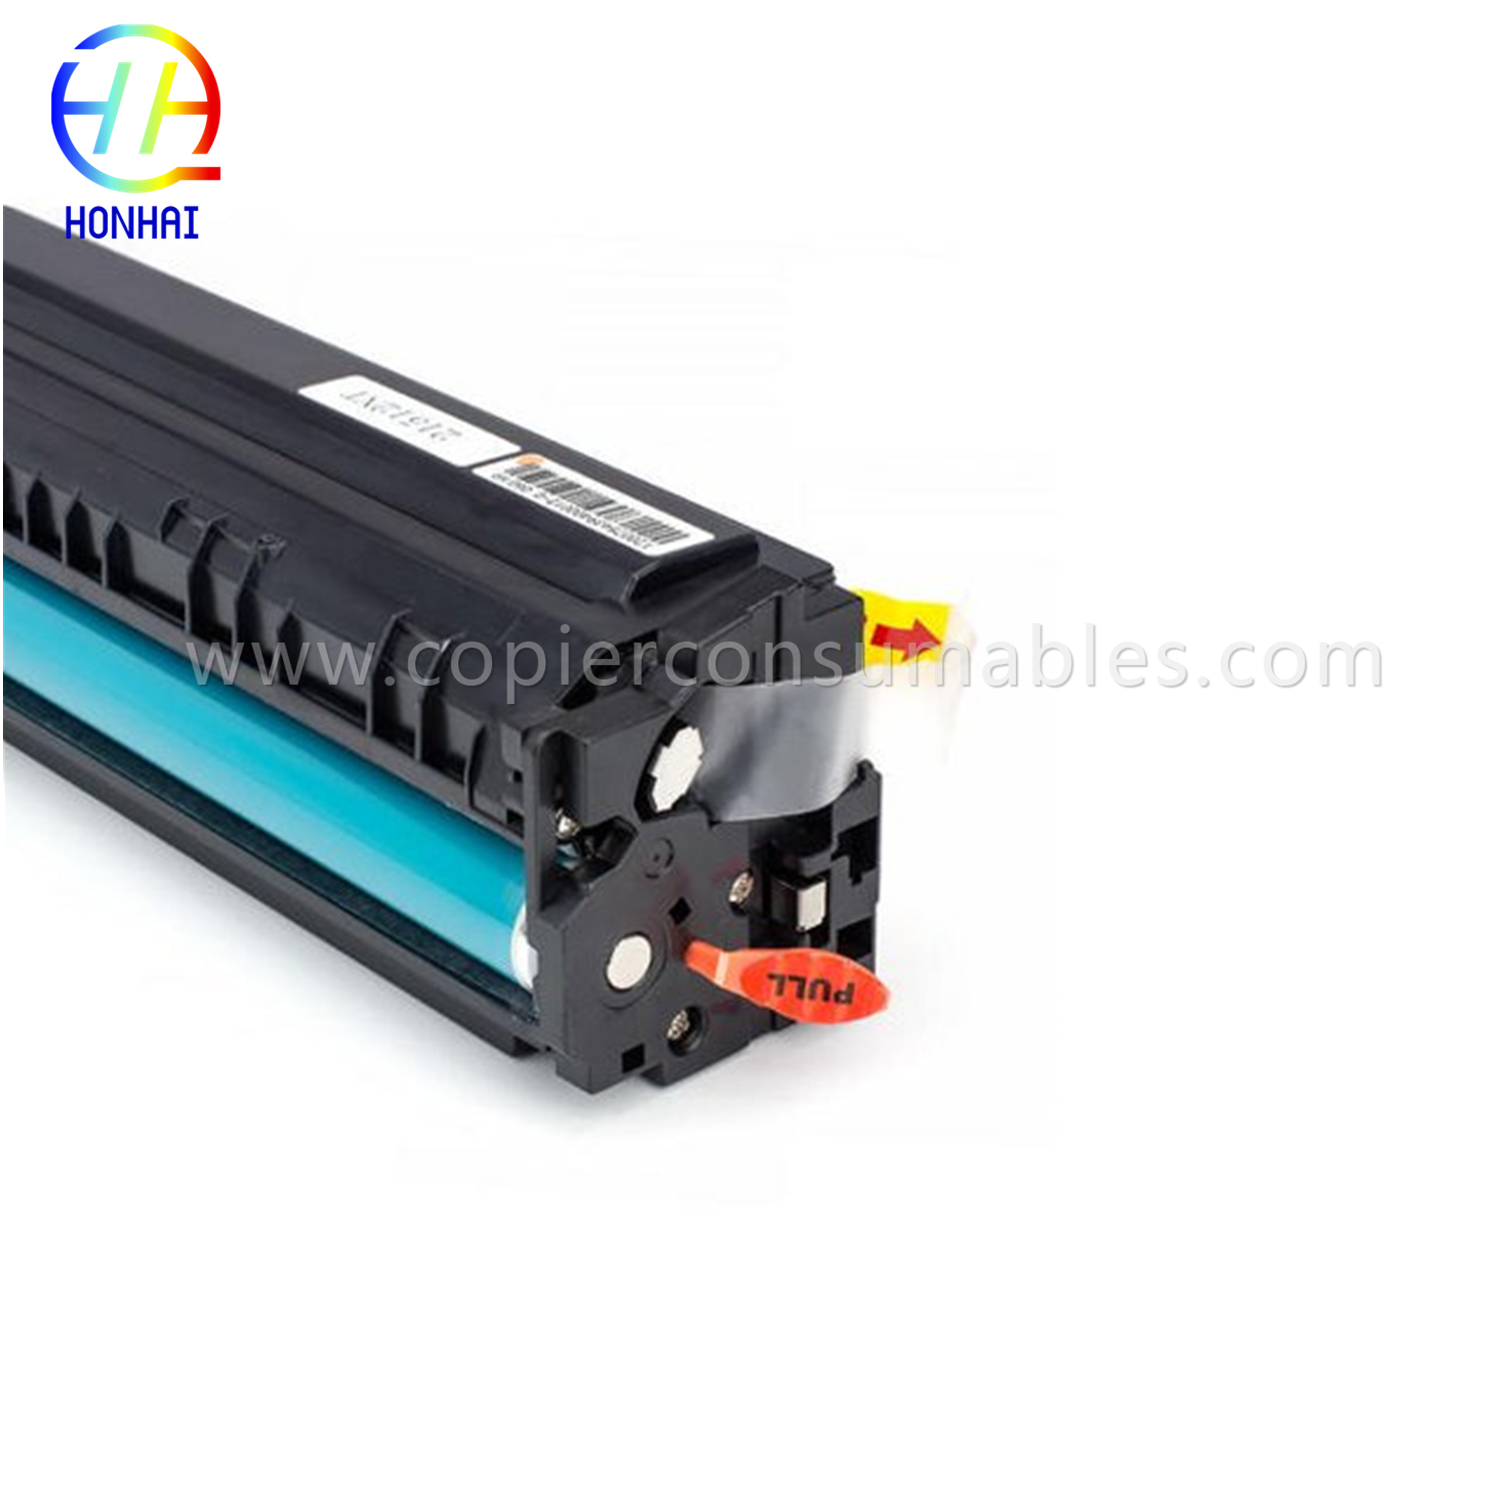 https://www.copierhonhaitech.com/toner-cartridge-for-hp-color-laserjet-pro-m452dn-m452dw-m452nw-mfp-m377dw-mfp-m477fdn-mfp-m477fdw-mfp-4cf-wam4 i-oem-product/